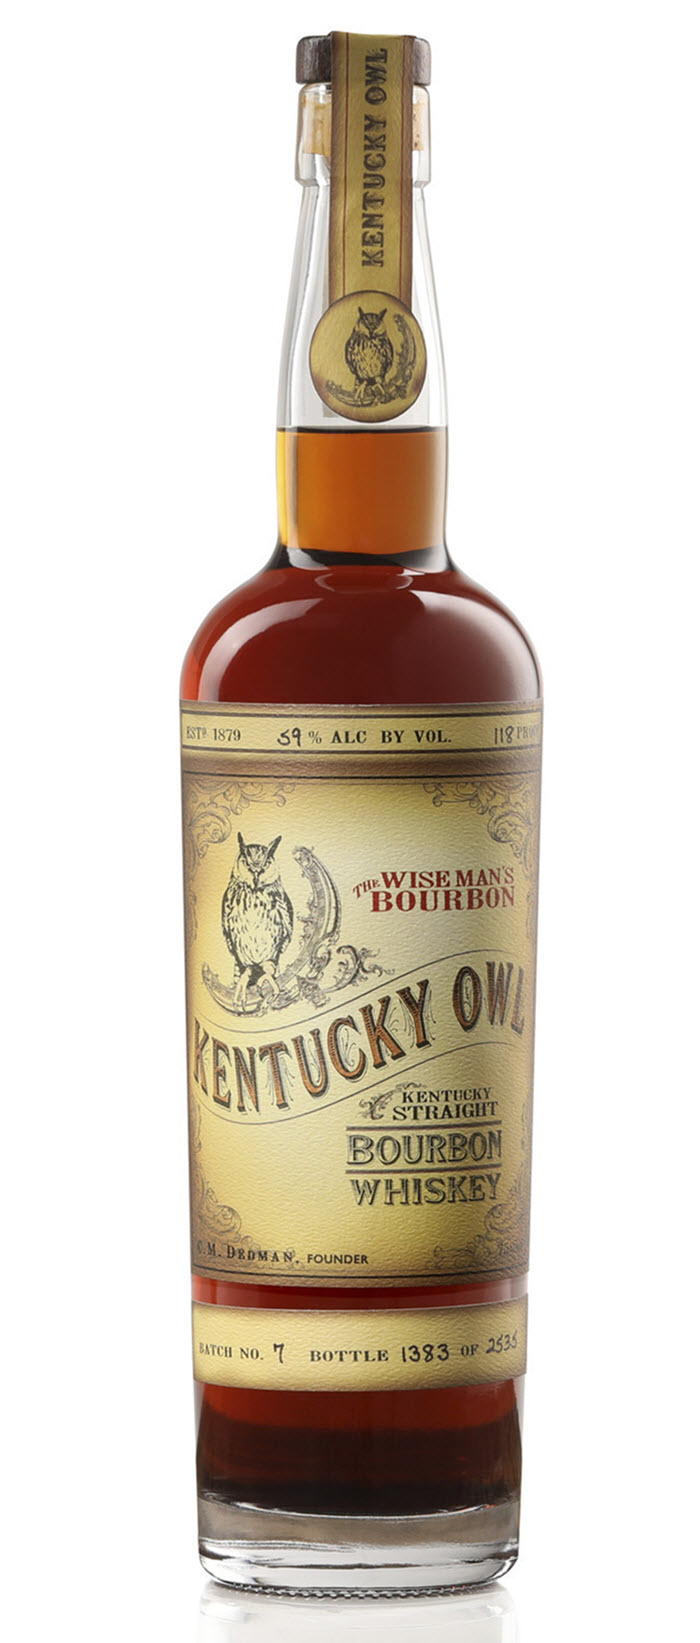 The Wiseman's Bourbon - Kentucky Owl Bourbon, Batch 7